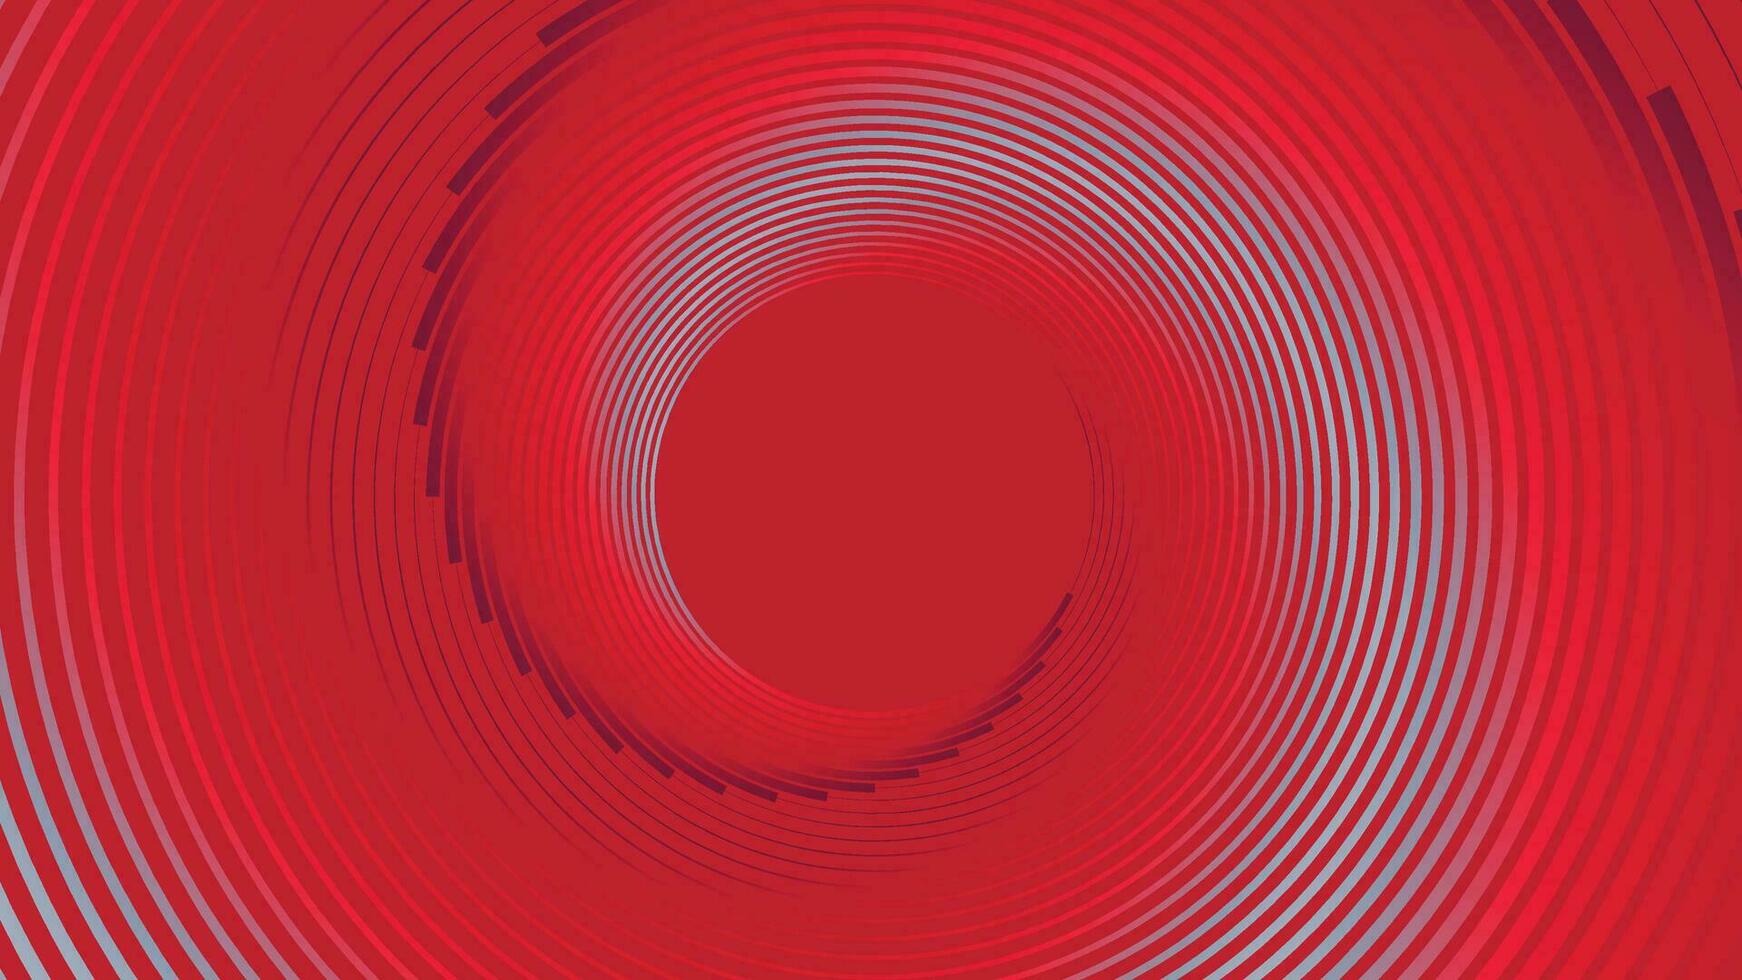 Abstract spiral line vortex logo design background. vector